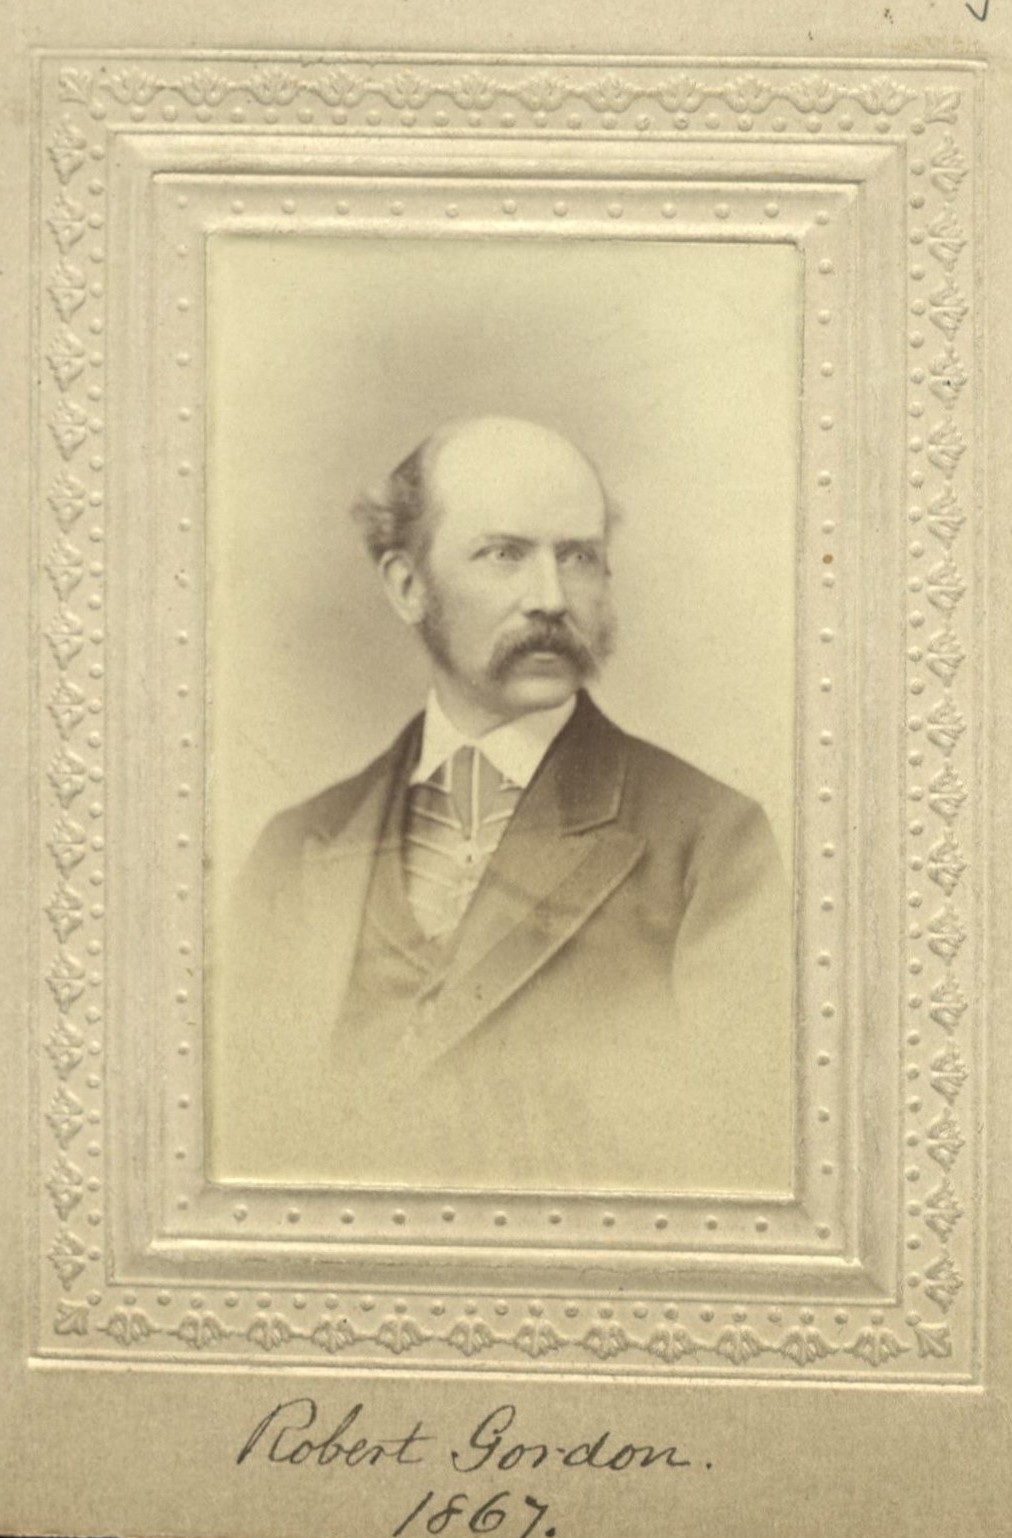 Member portrait of Robert Gordon